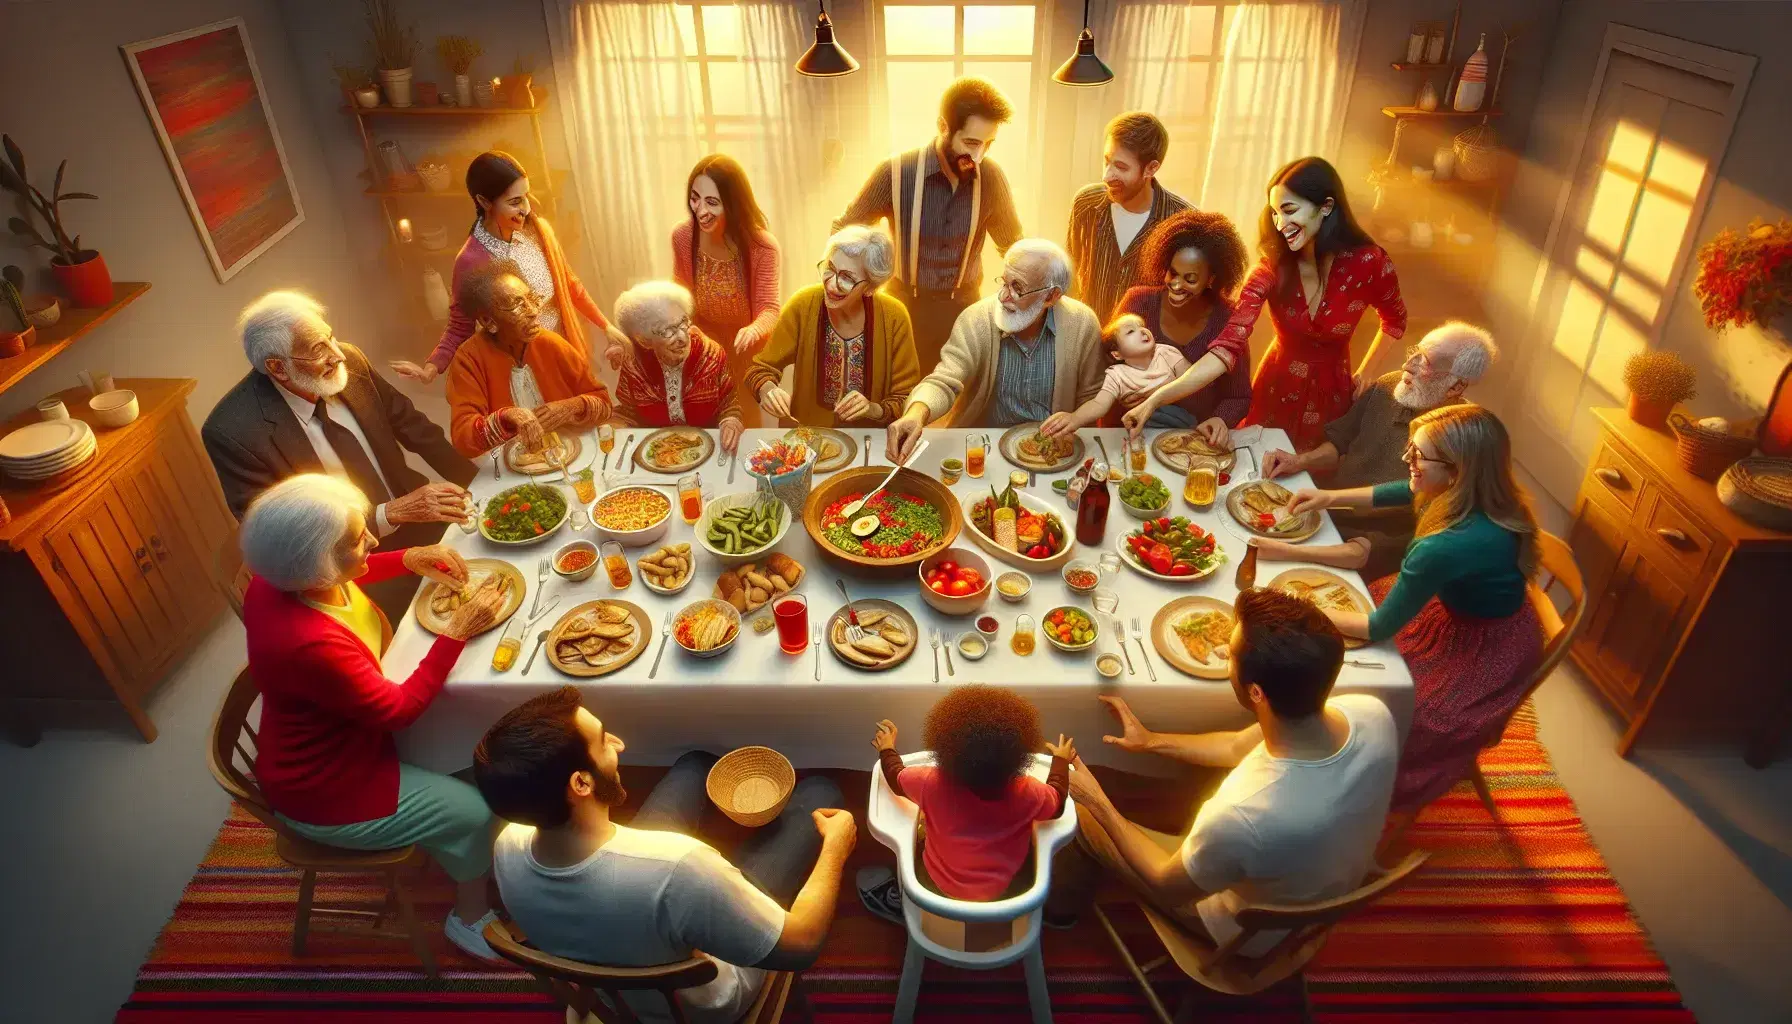 Grupo familiar diverso disfrutando de una comida juntos alrededor de una mesa con mantel blanco, platos variados y bebidas, en un ambiente cálido y alegre.